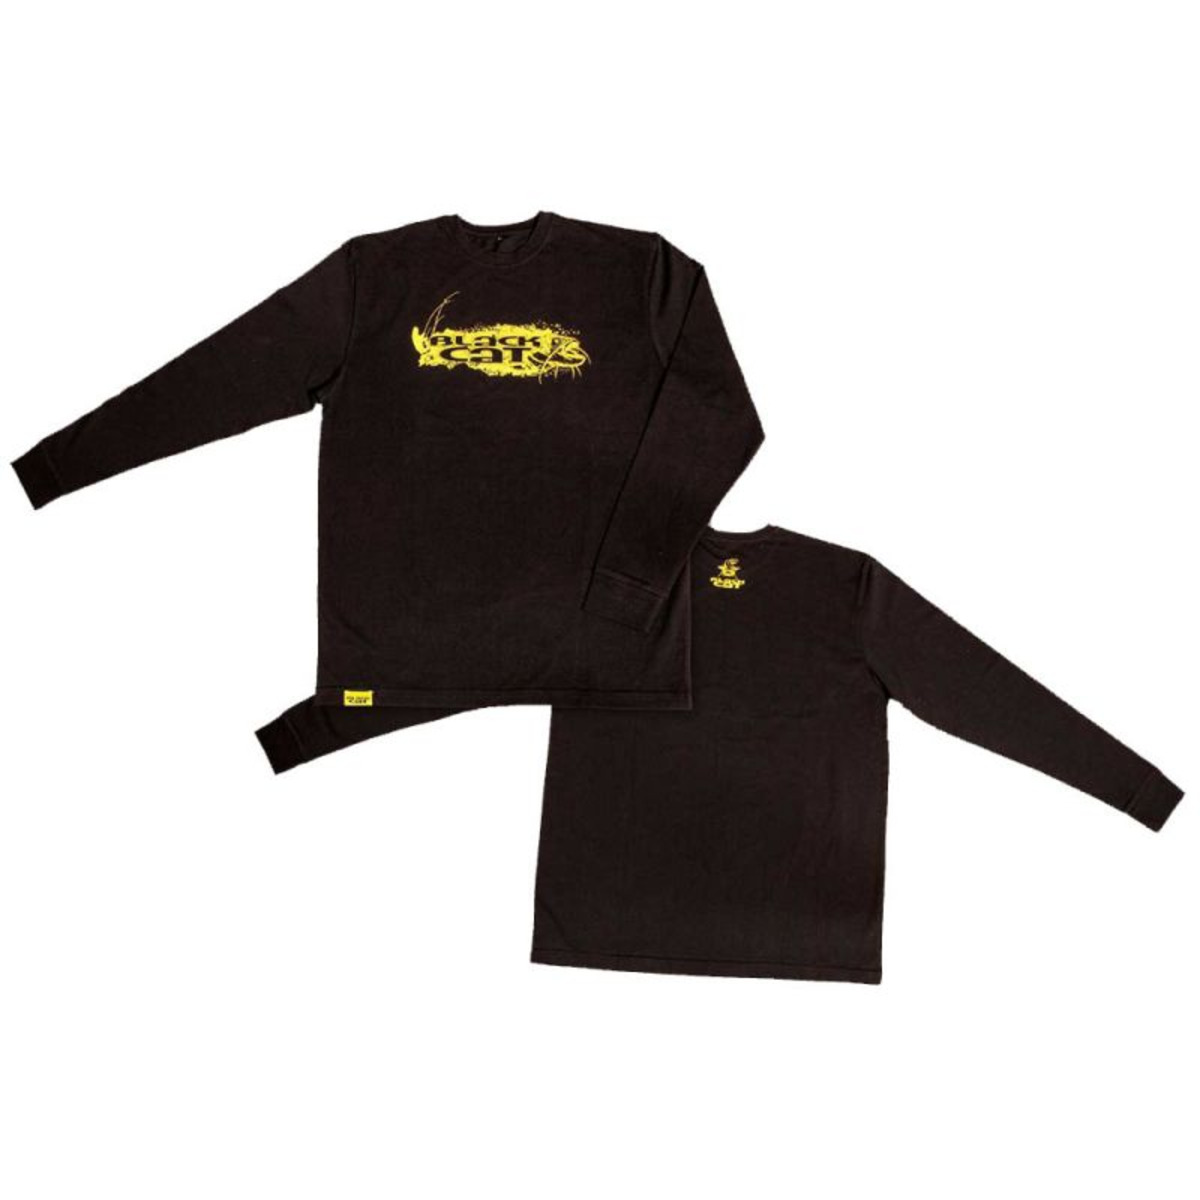 Black Cat Longsleeve Shirt - XXXL - Black